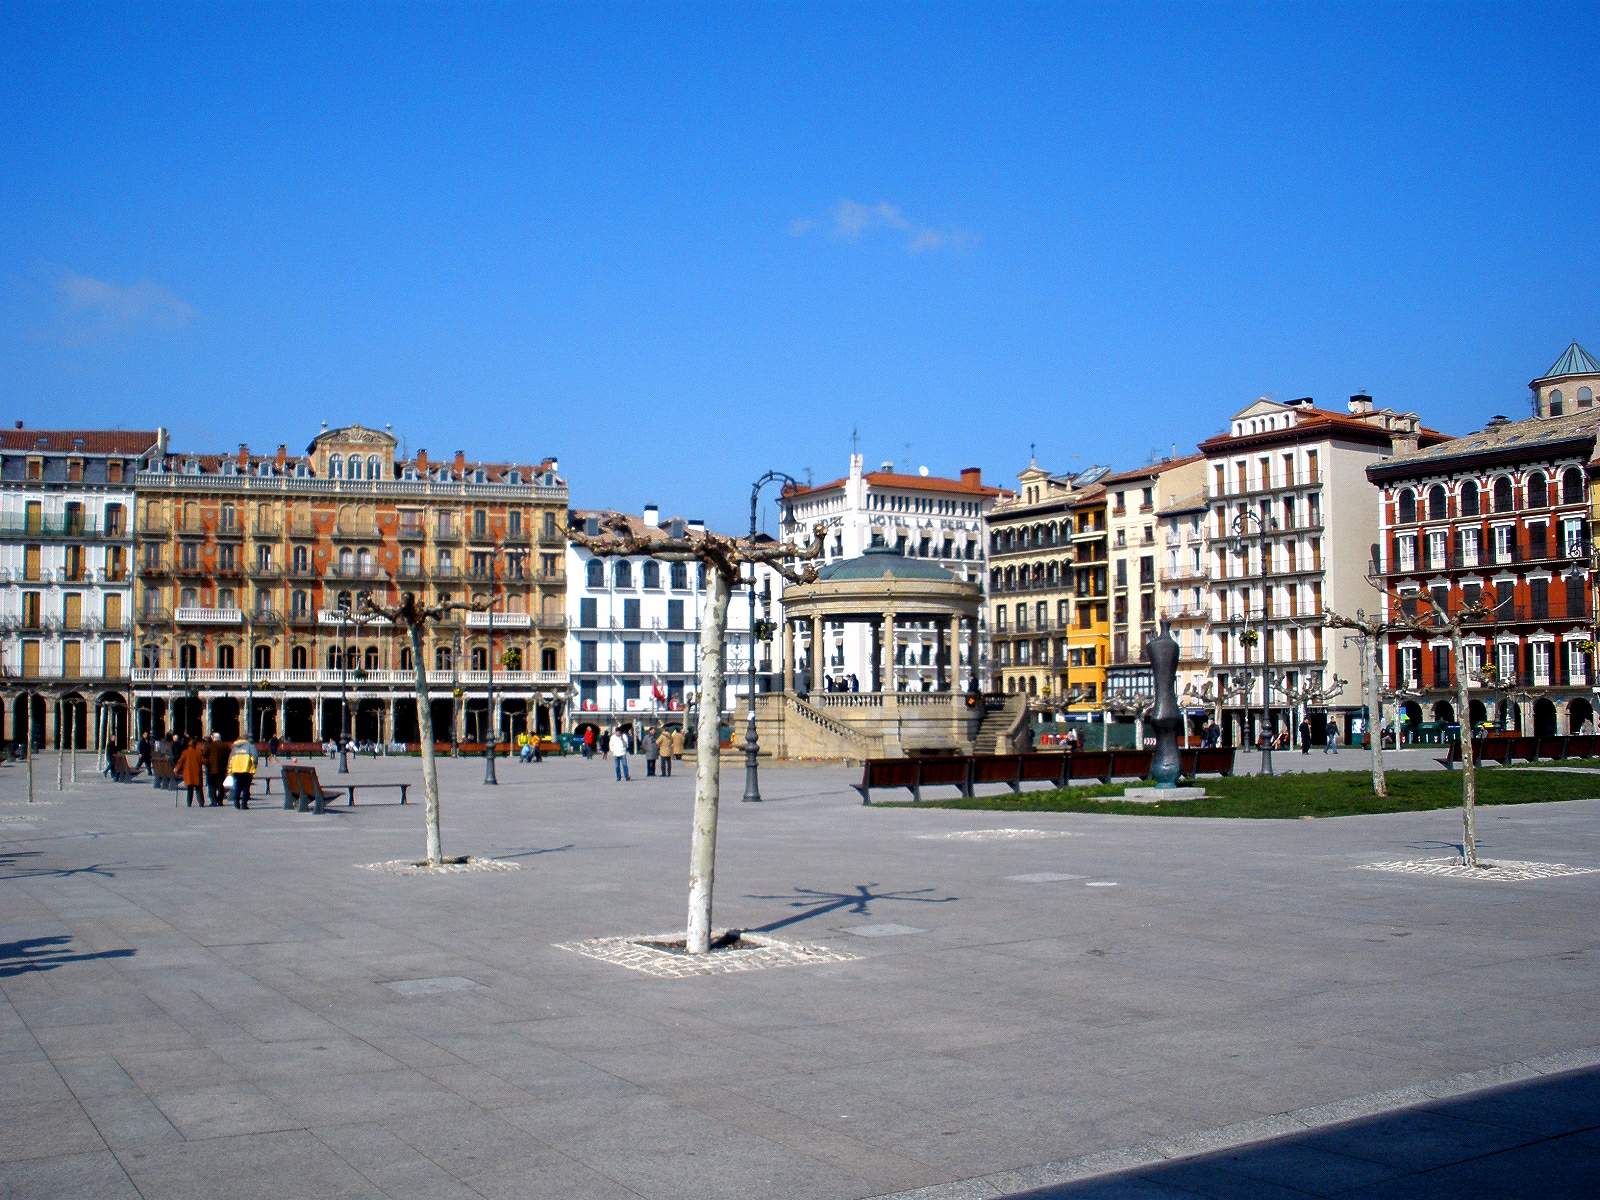 File:Pamplona - Plaza del Castillo 11.jpg - Wikimedia Commons